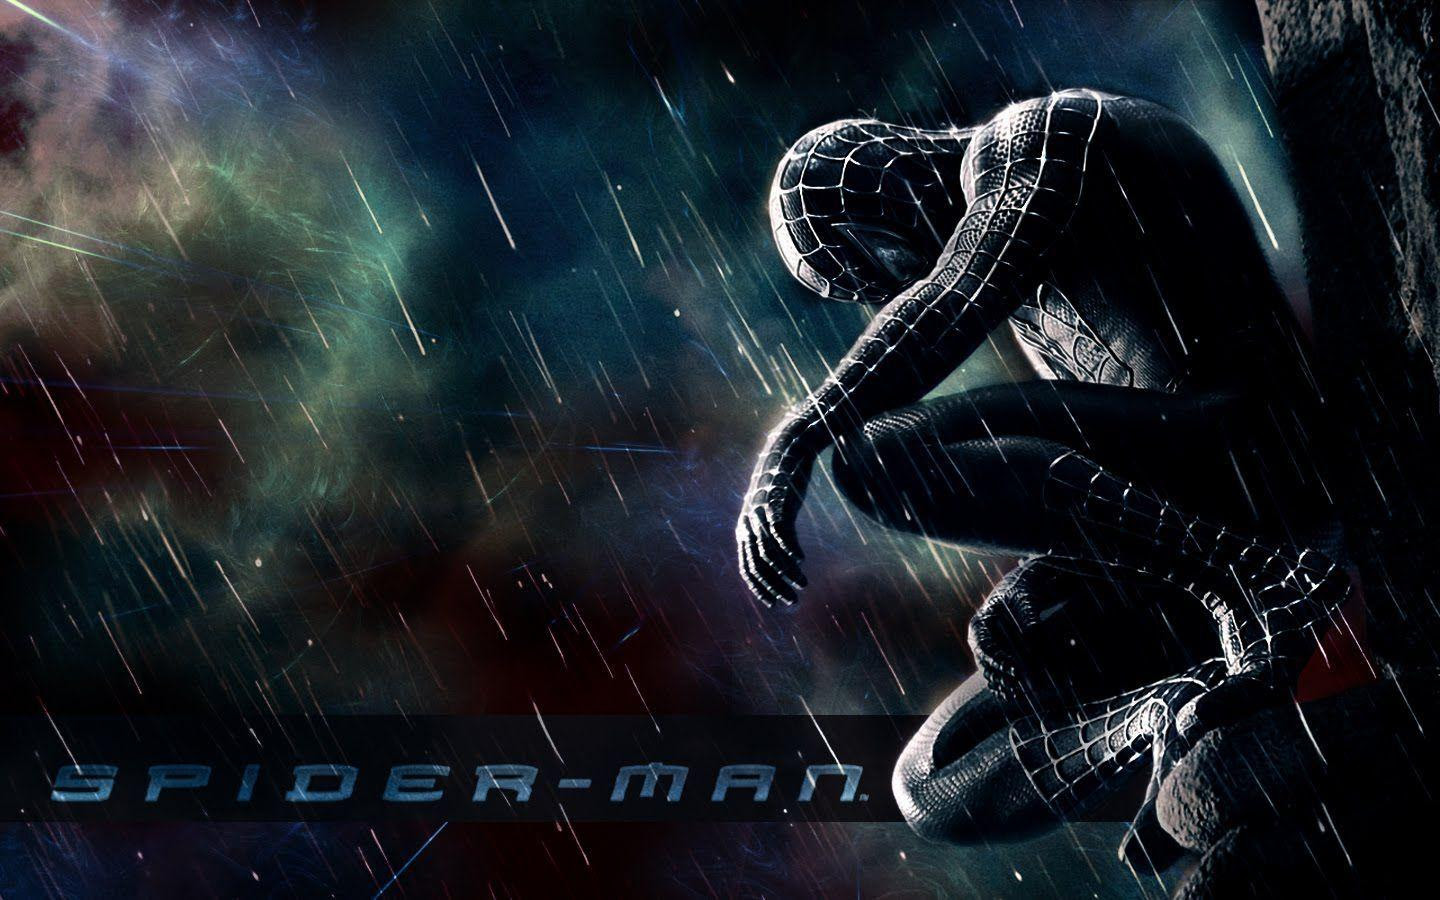 1050+ Gambar Wallpaper Keren Spiderman Terbaru